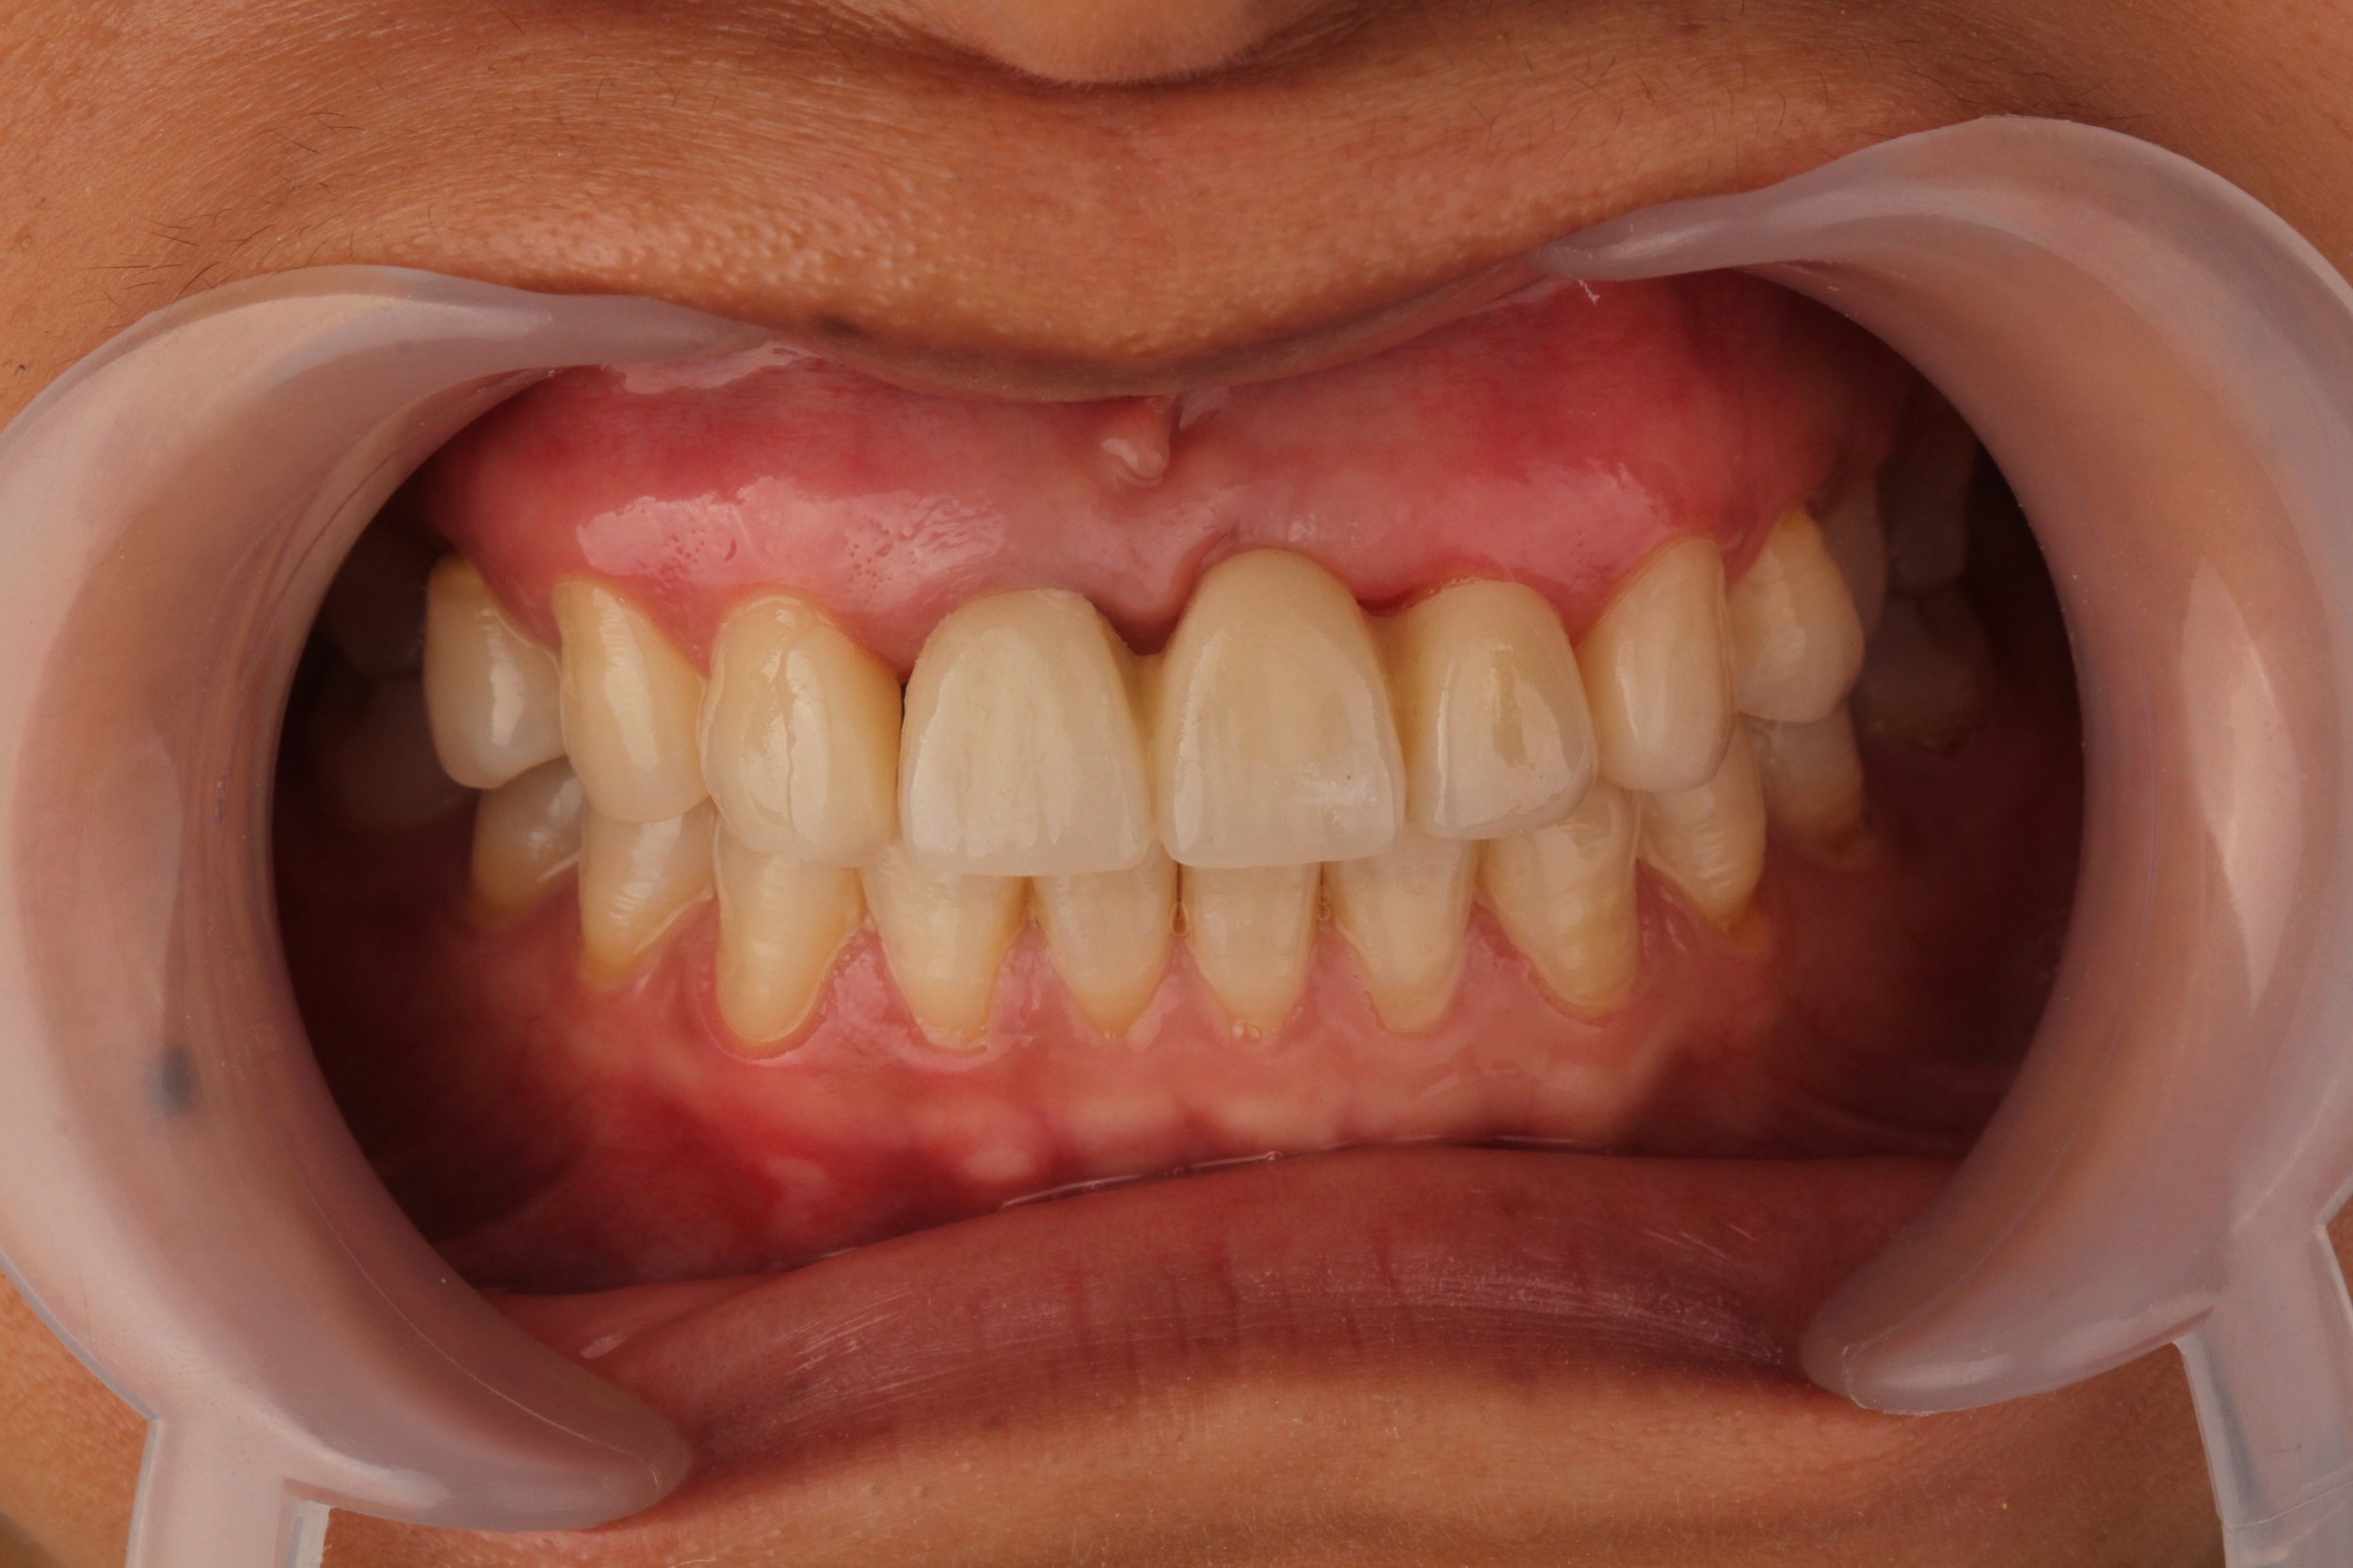 常见的牙体缺损及修复方法_广州德伦口腔